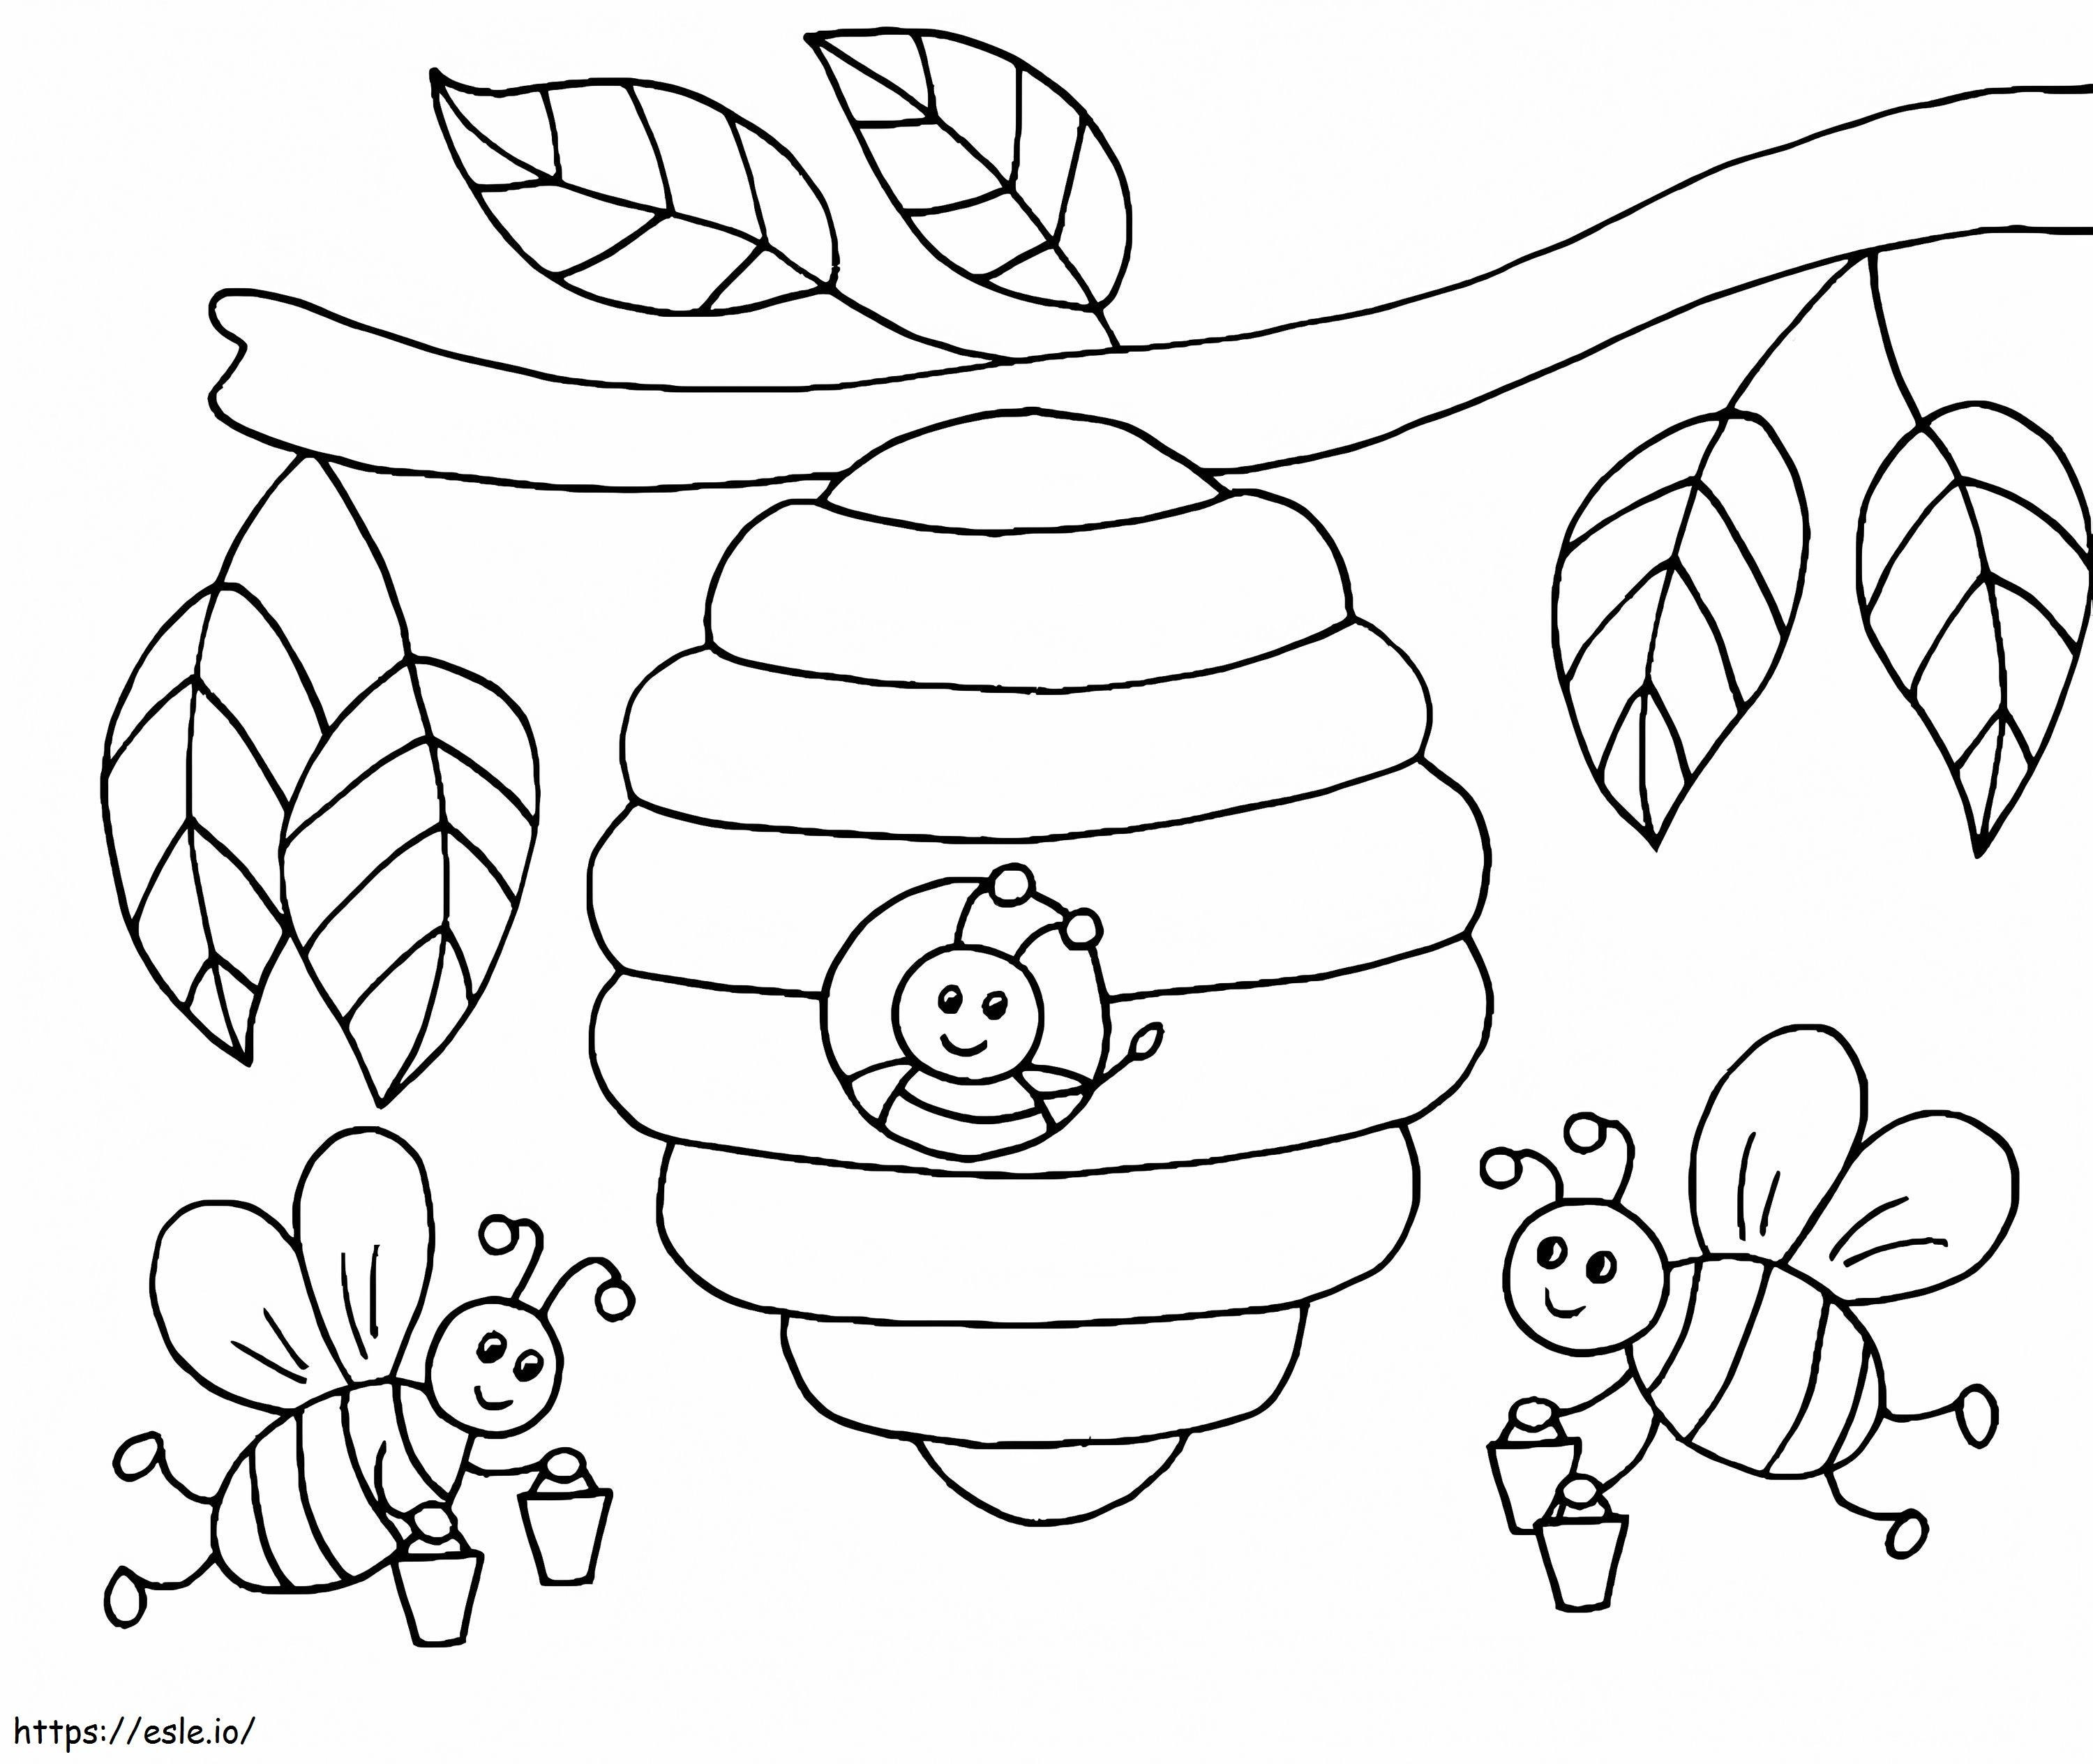 Bienen mit Bienenstock am Baum ausmalbilder